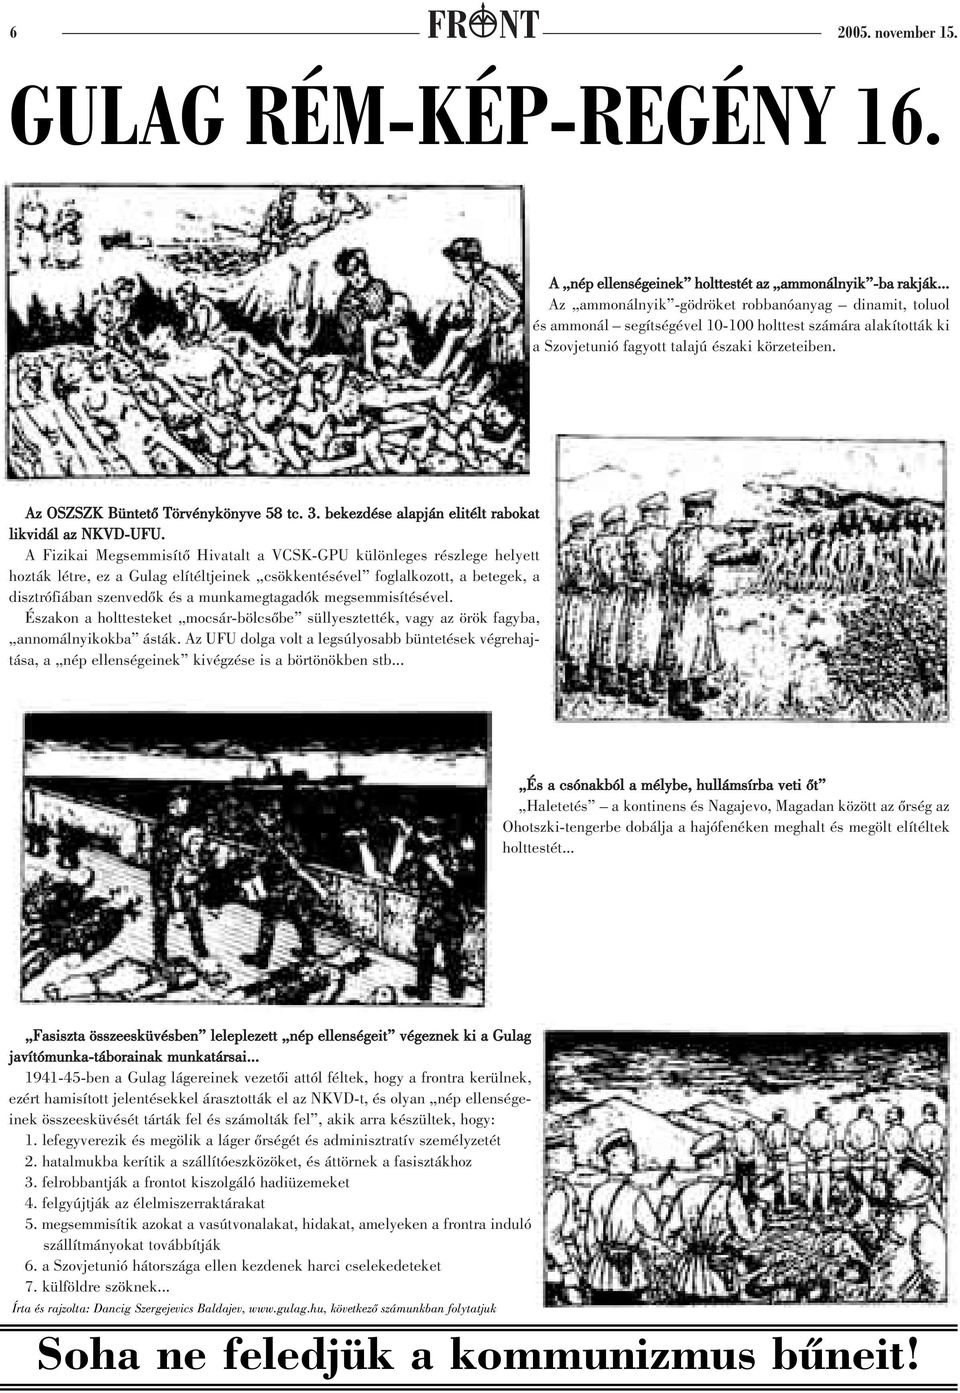 Az OSZSZK Büntetõ Törvénykönyve 58 tc. 3. bekezdése alapján elitélt rabokat likvidál az NKVD-UFU.